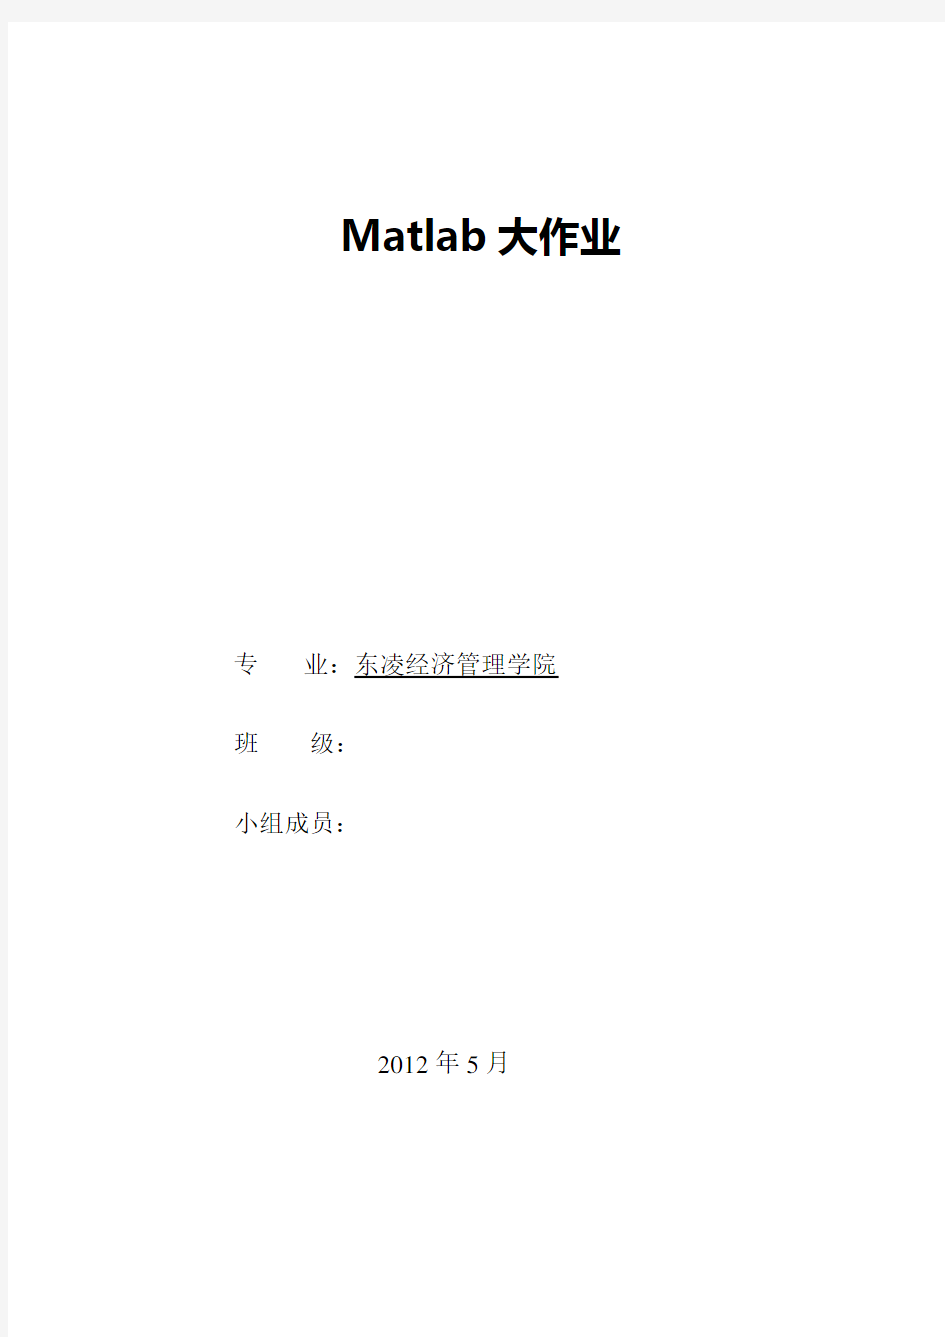 用matlab解析实际案例